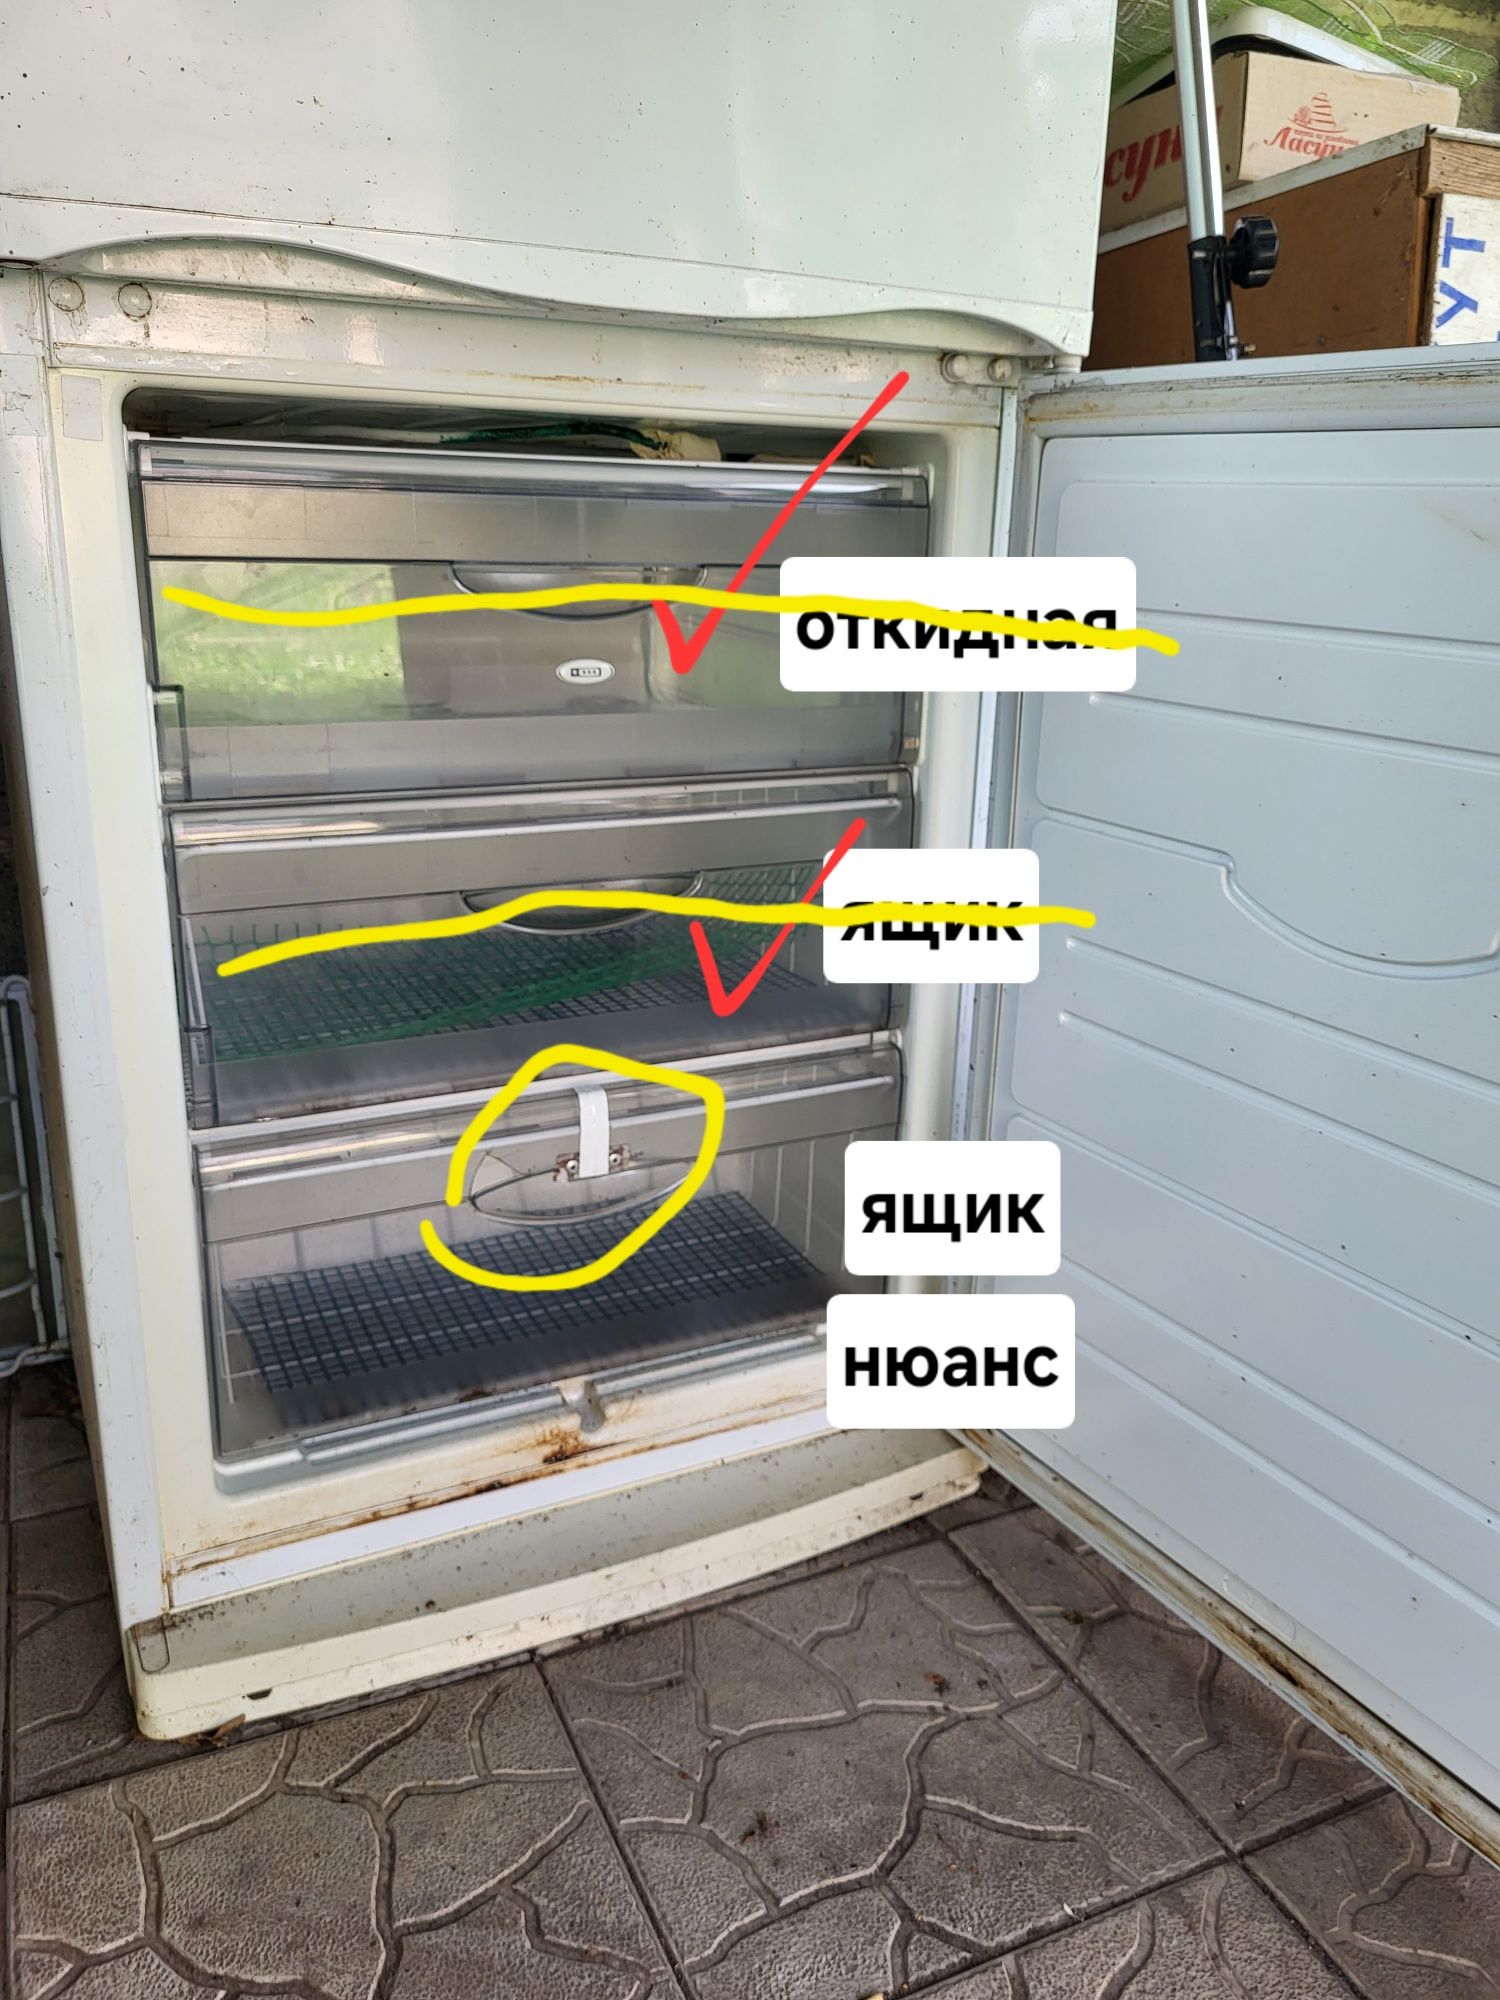 Деталі холодильника Атлант